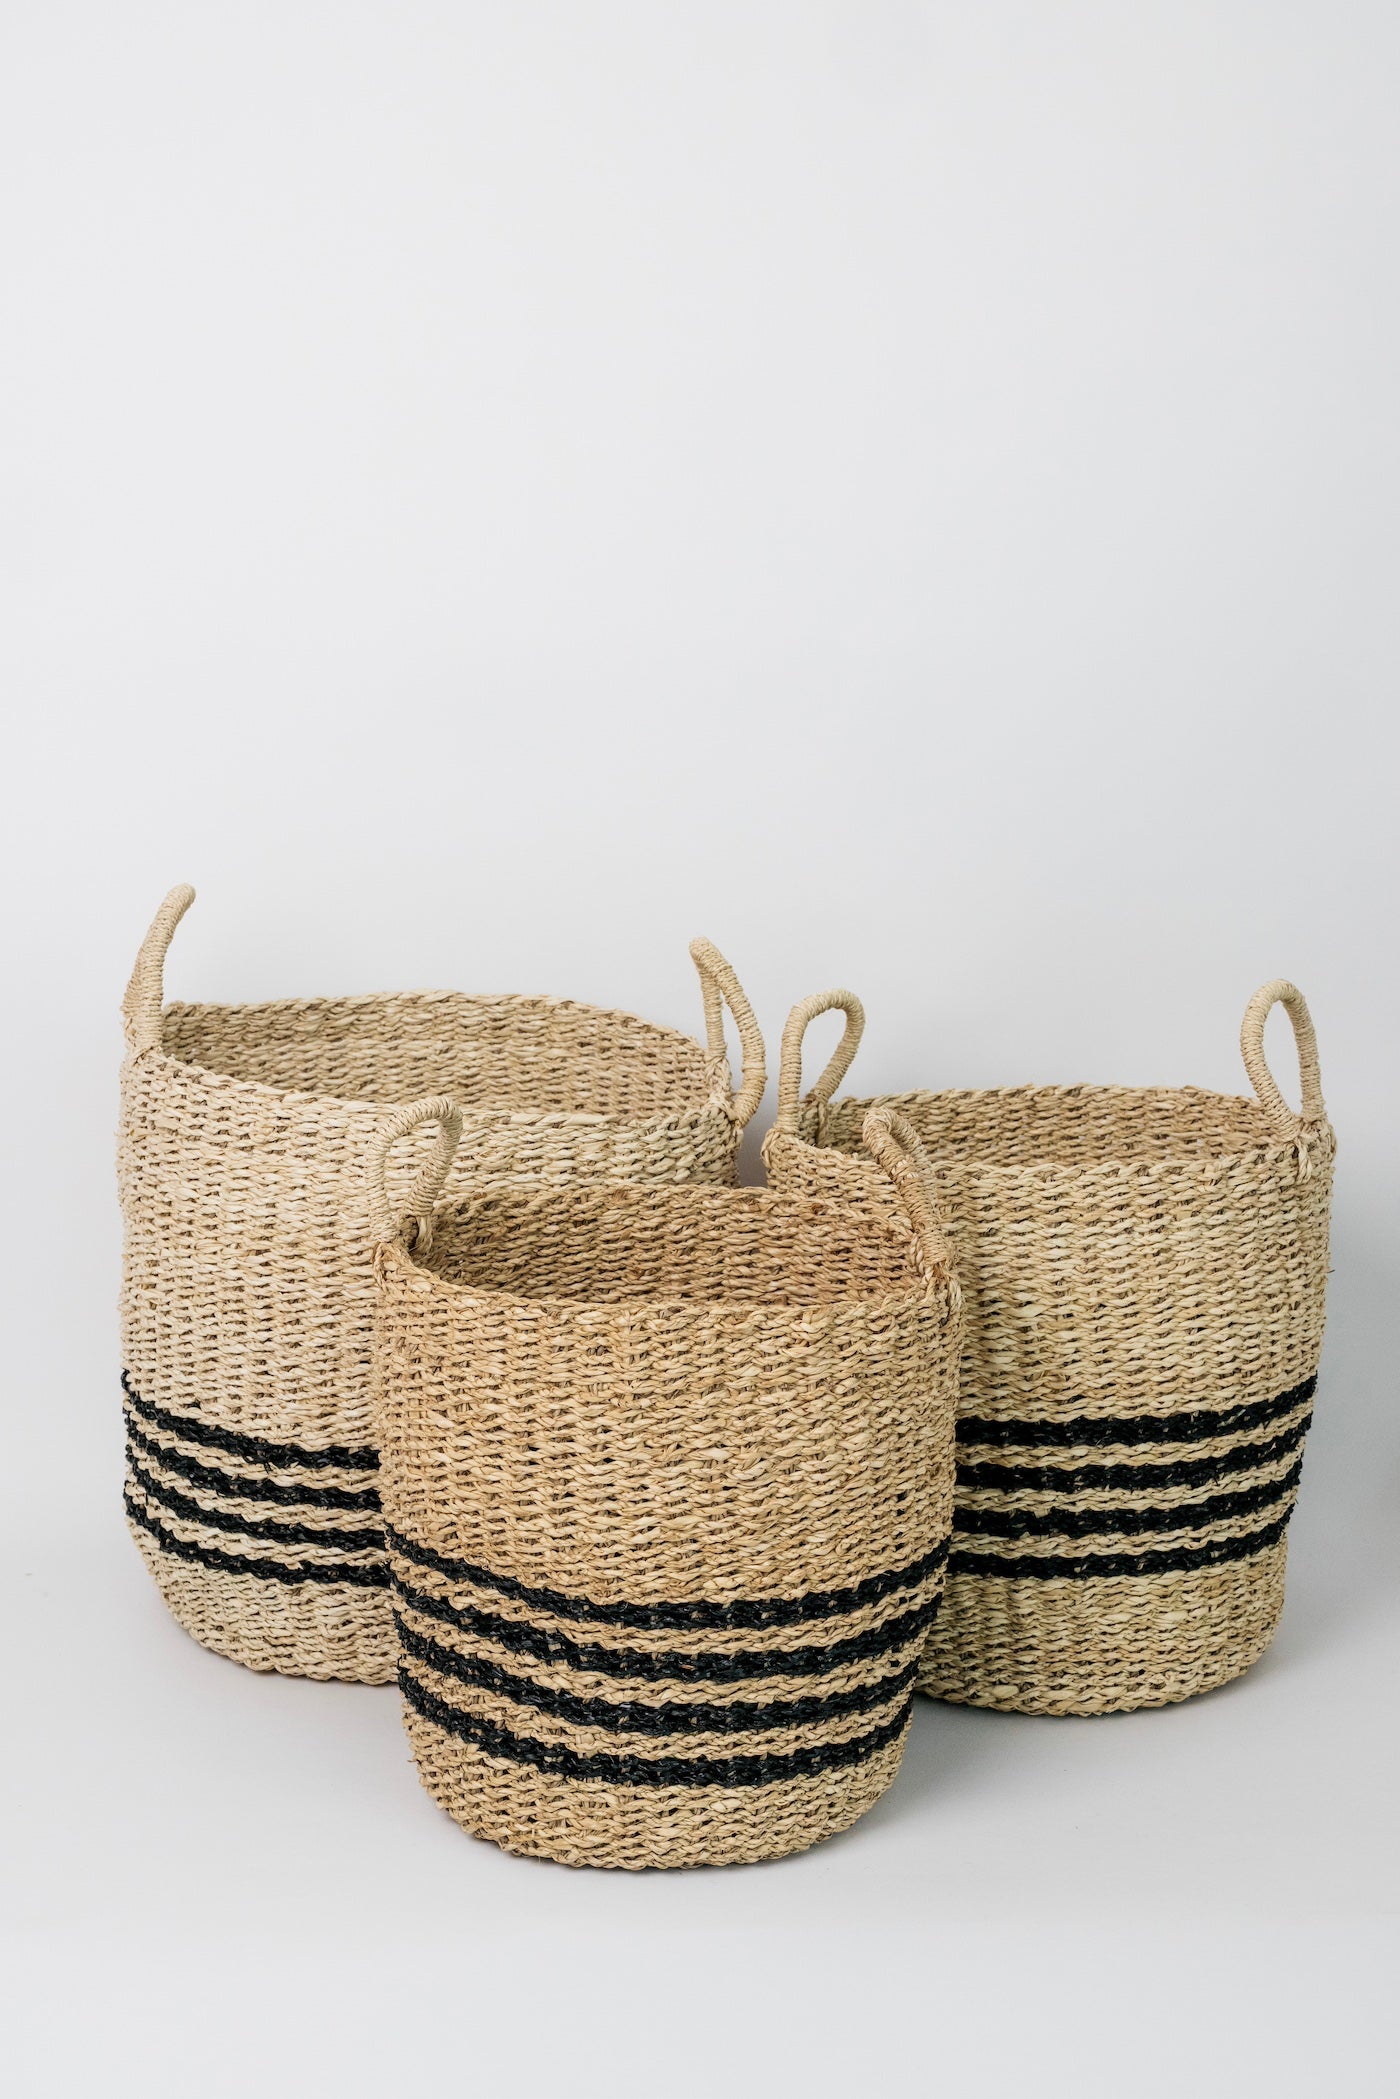 Jillian Striped Basket - 3 Sizes